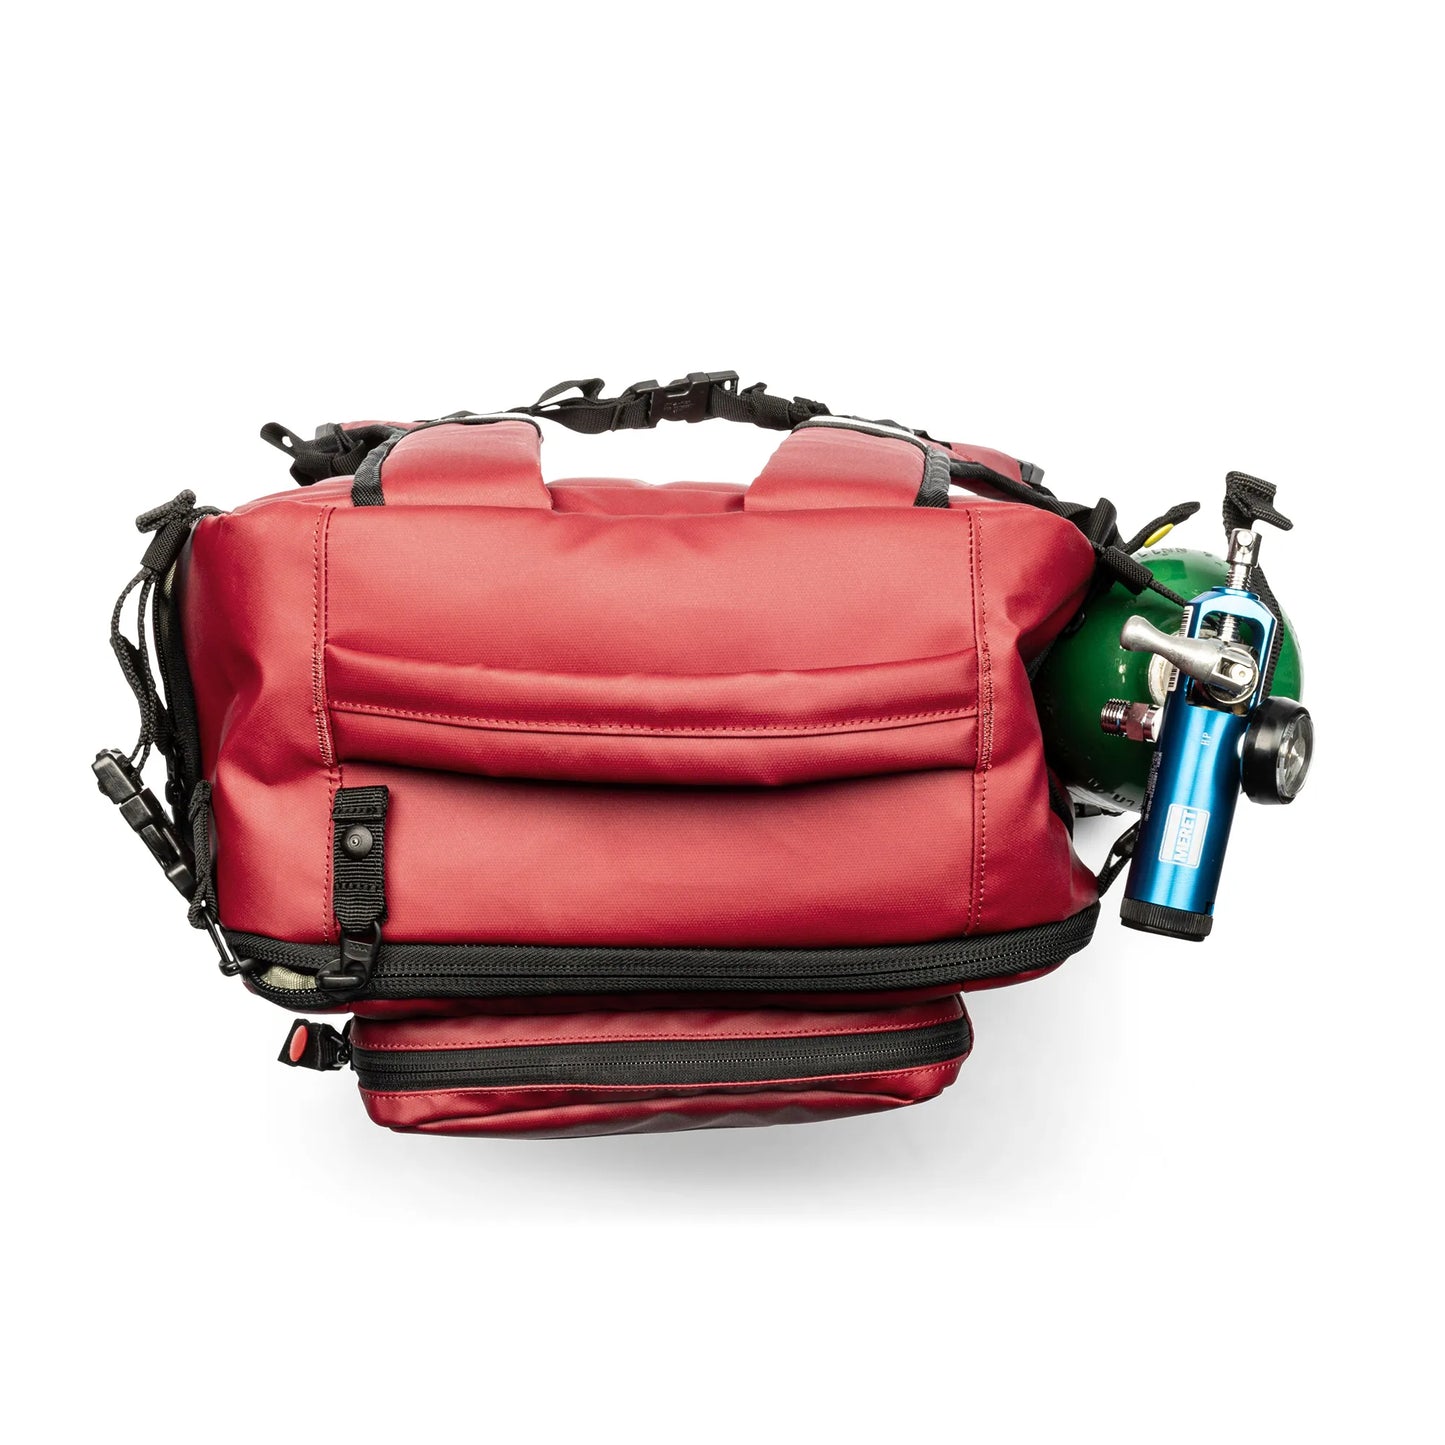 5.11 Tactical Responder 48 Backpack - 35 Liter